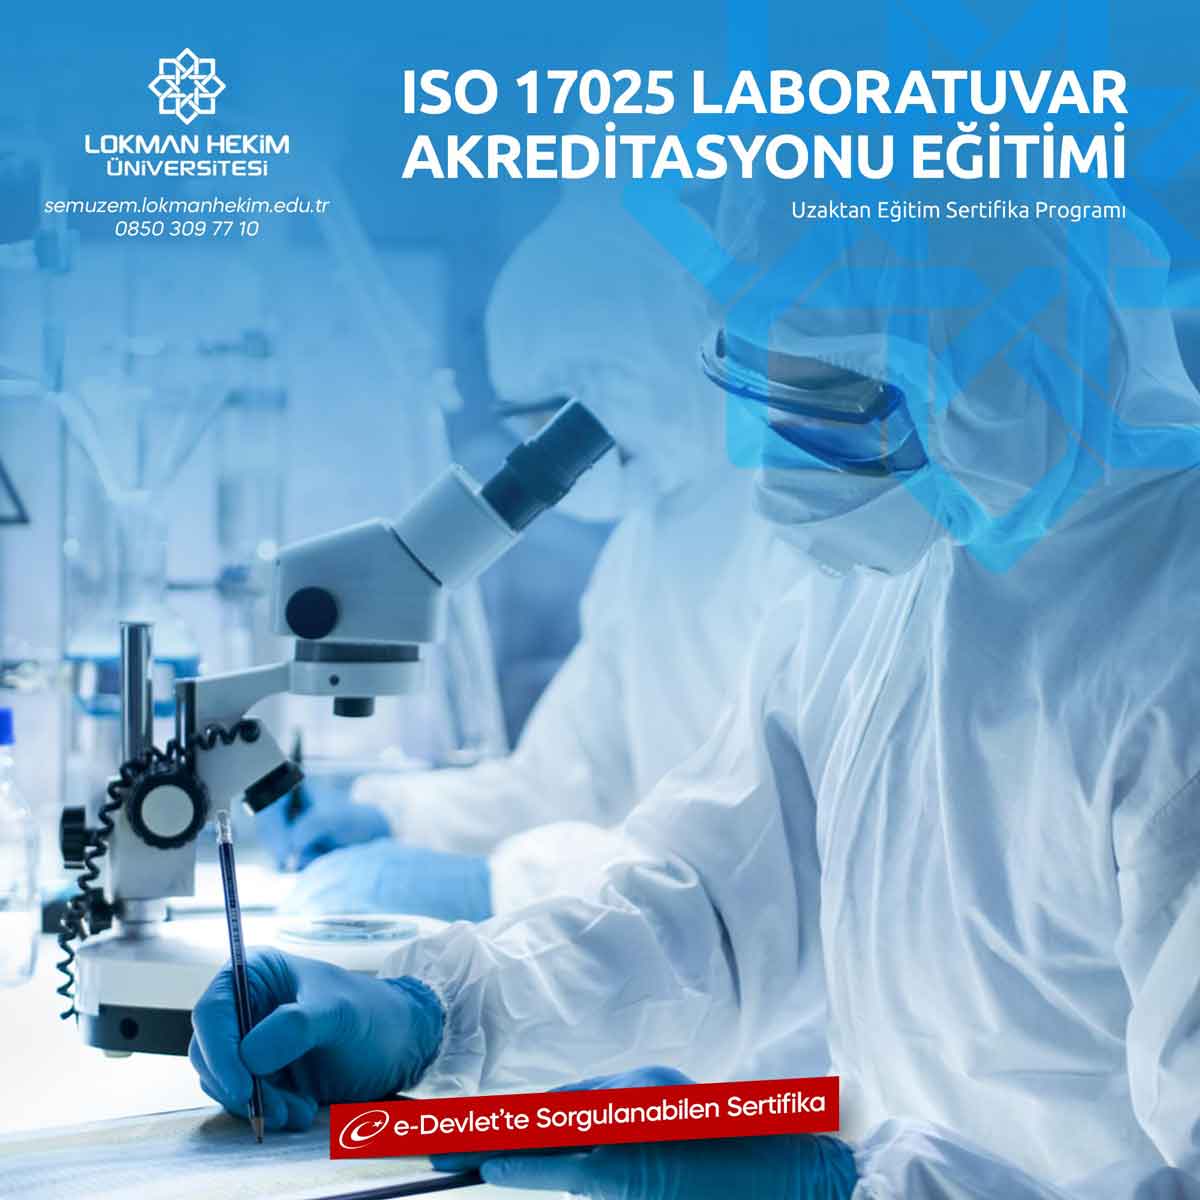 ISO 17025 Laboratuvar Akreditasyonu Sertifikası Nedir, Nasıl Alınır?